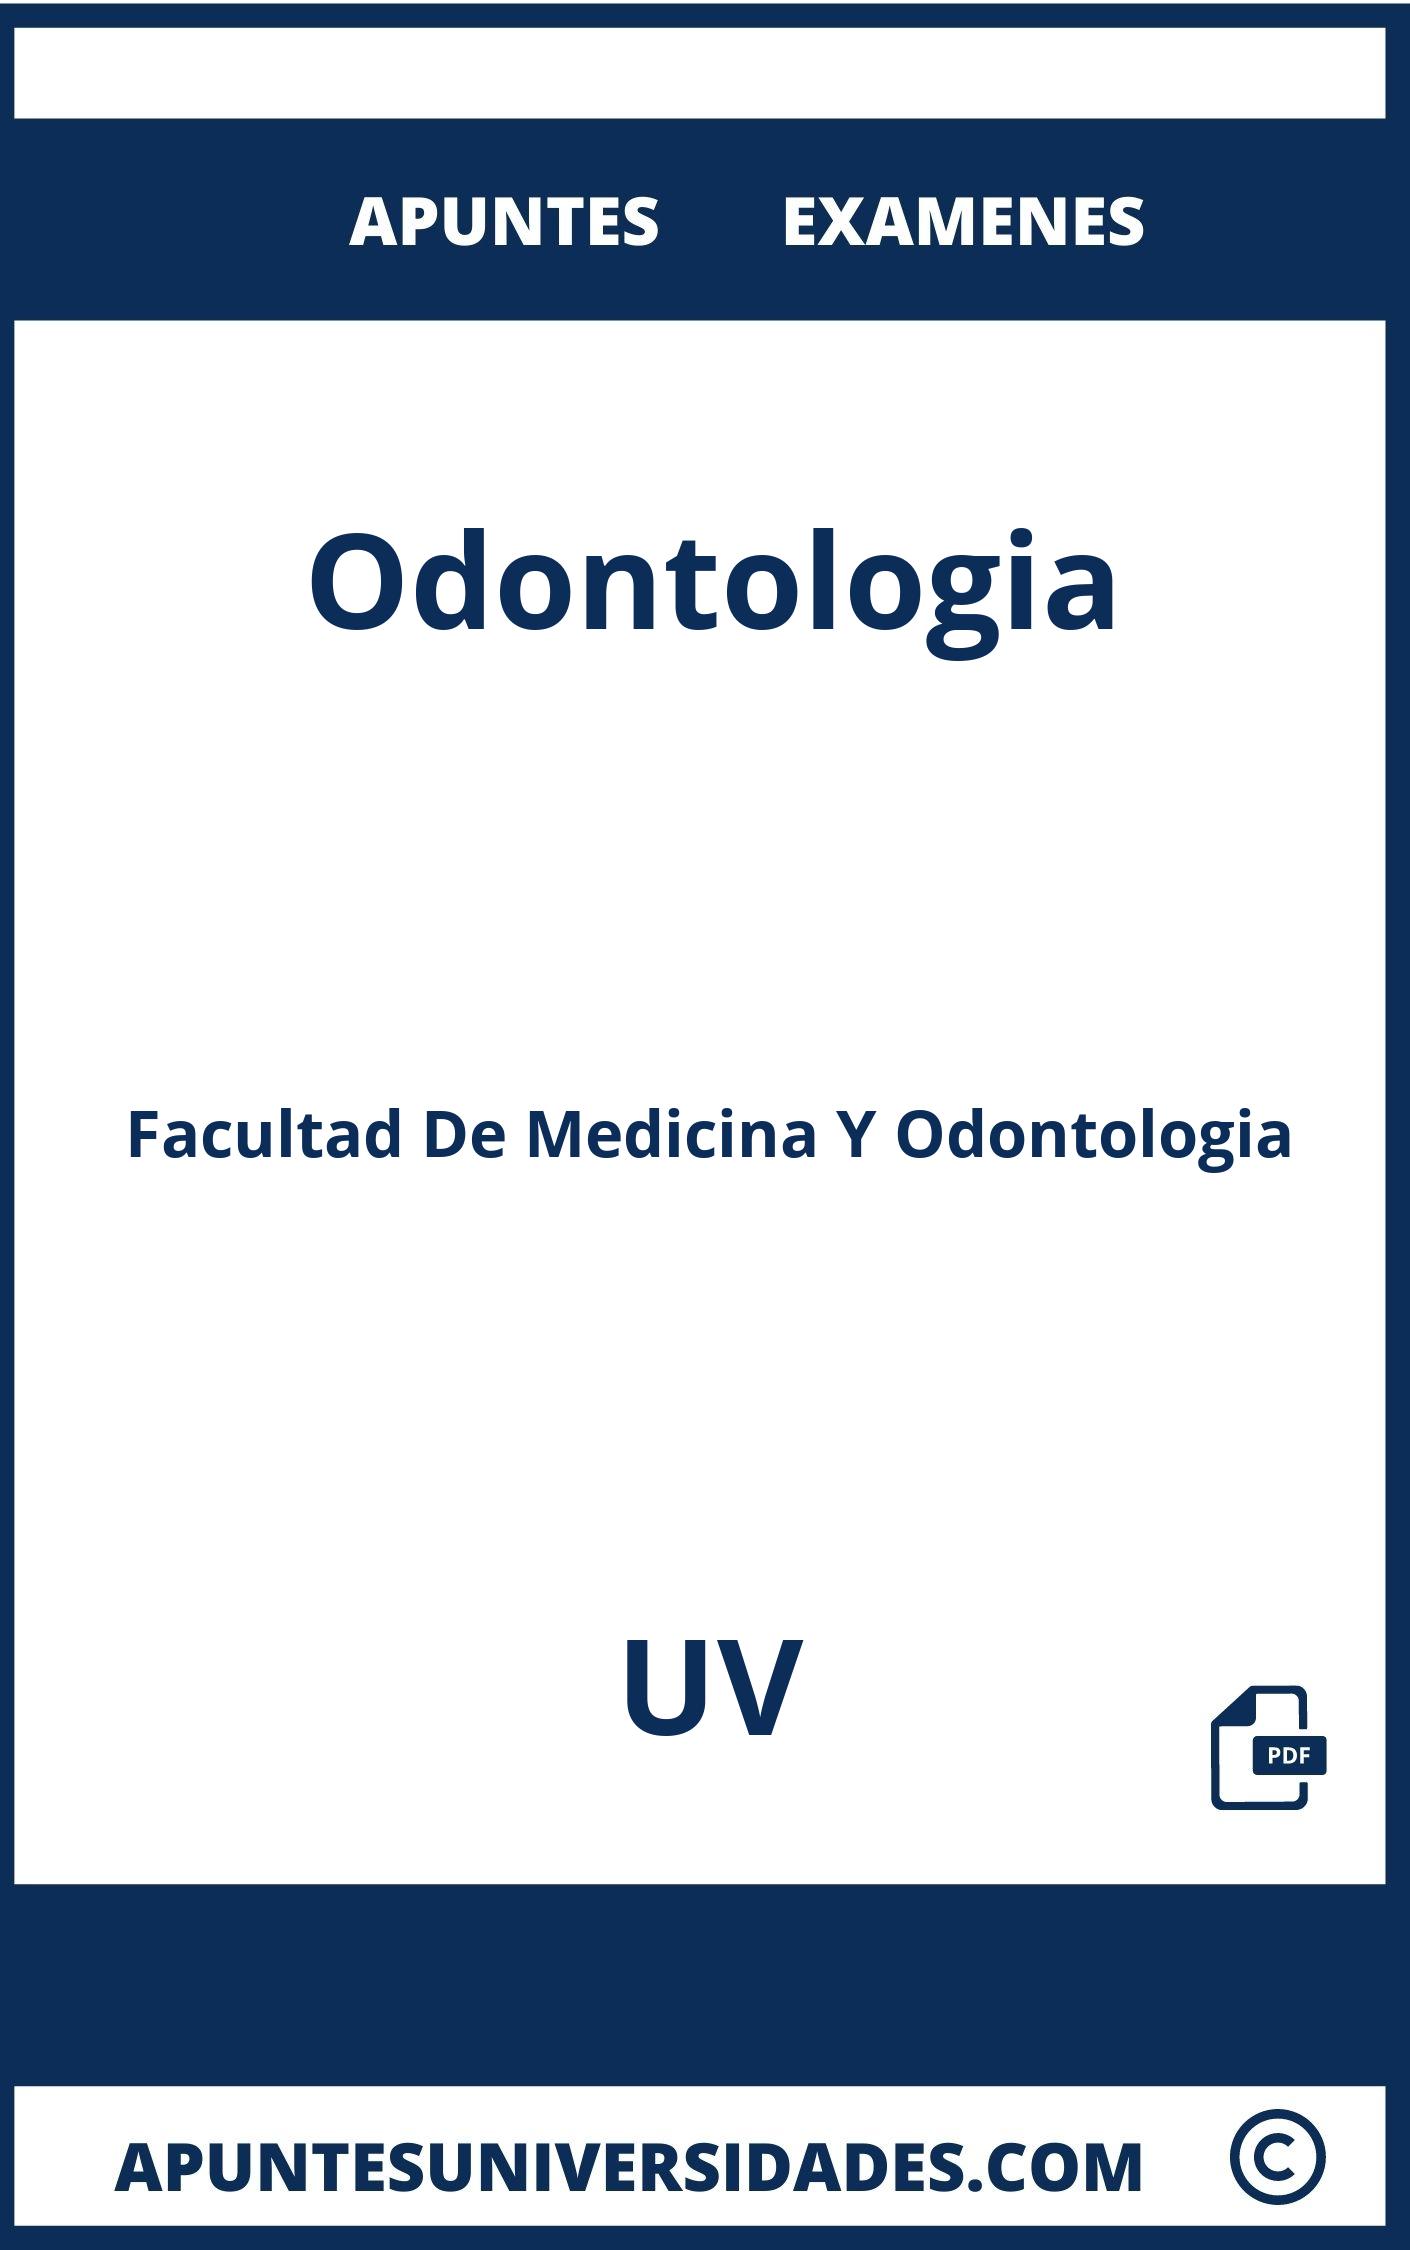 Examenes y Apuntes de Odontologia UV